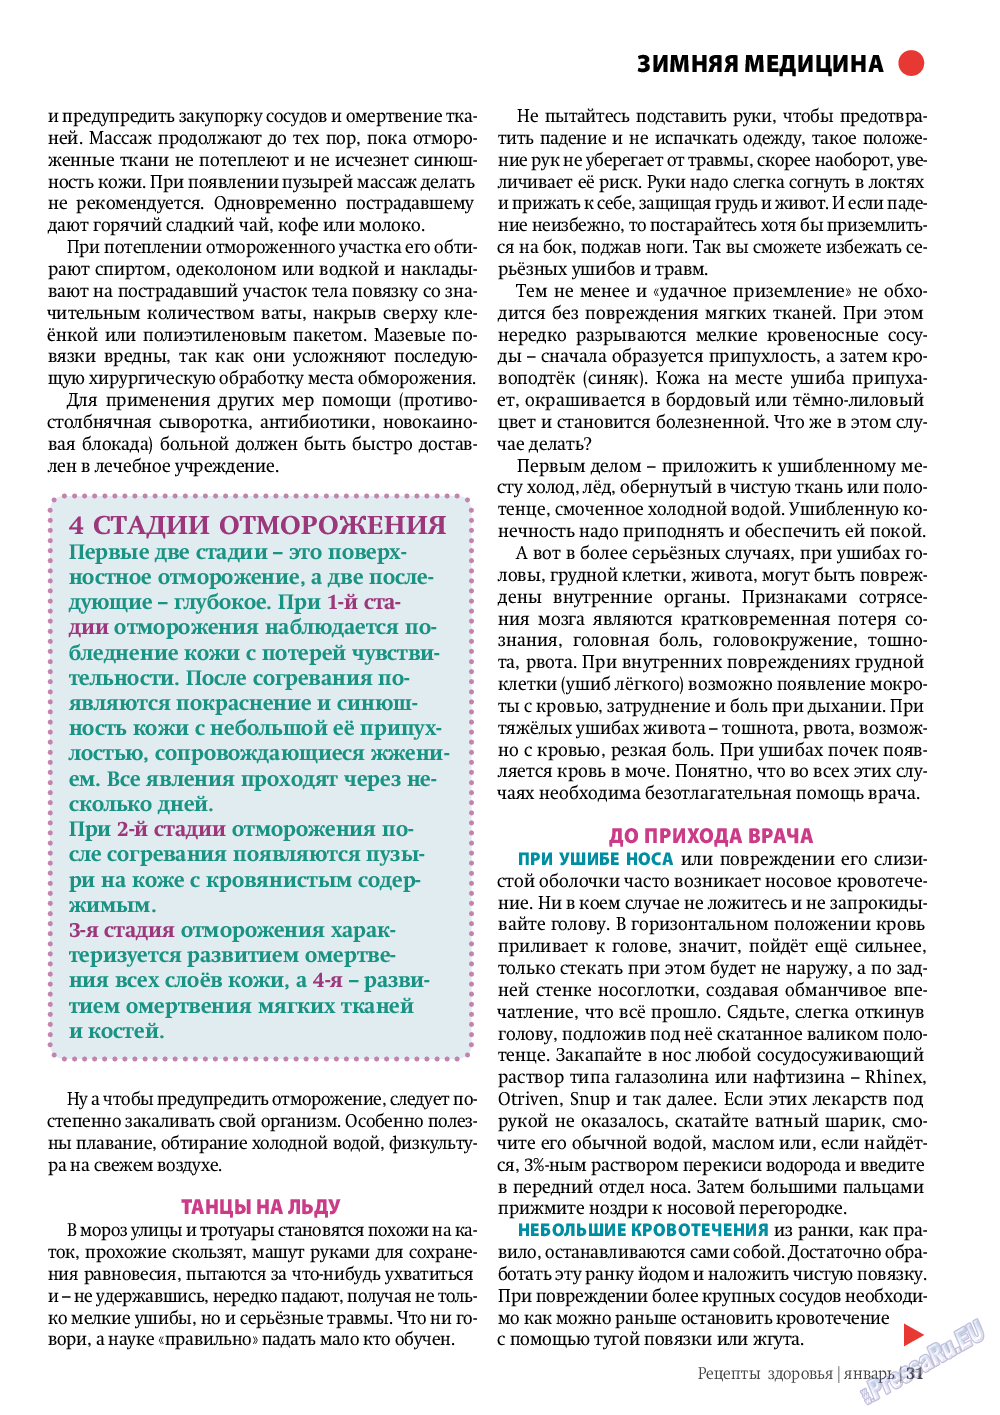 Рецепты здоровья, журнал. 2012 №1 стр.31